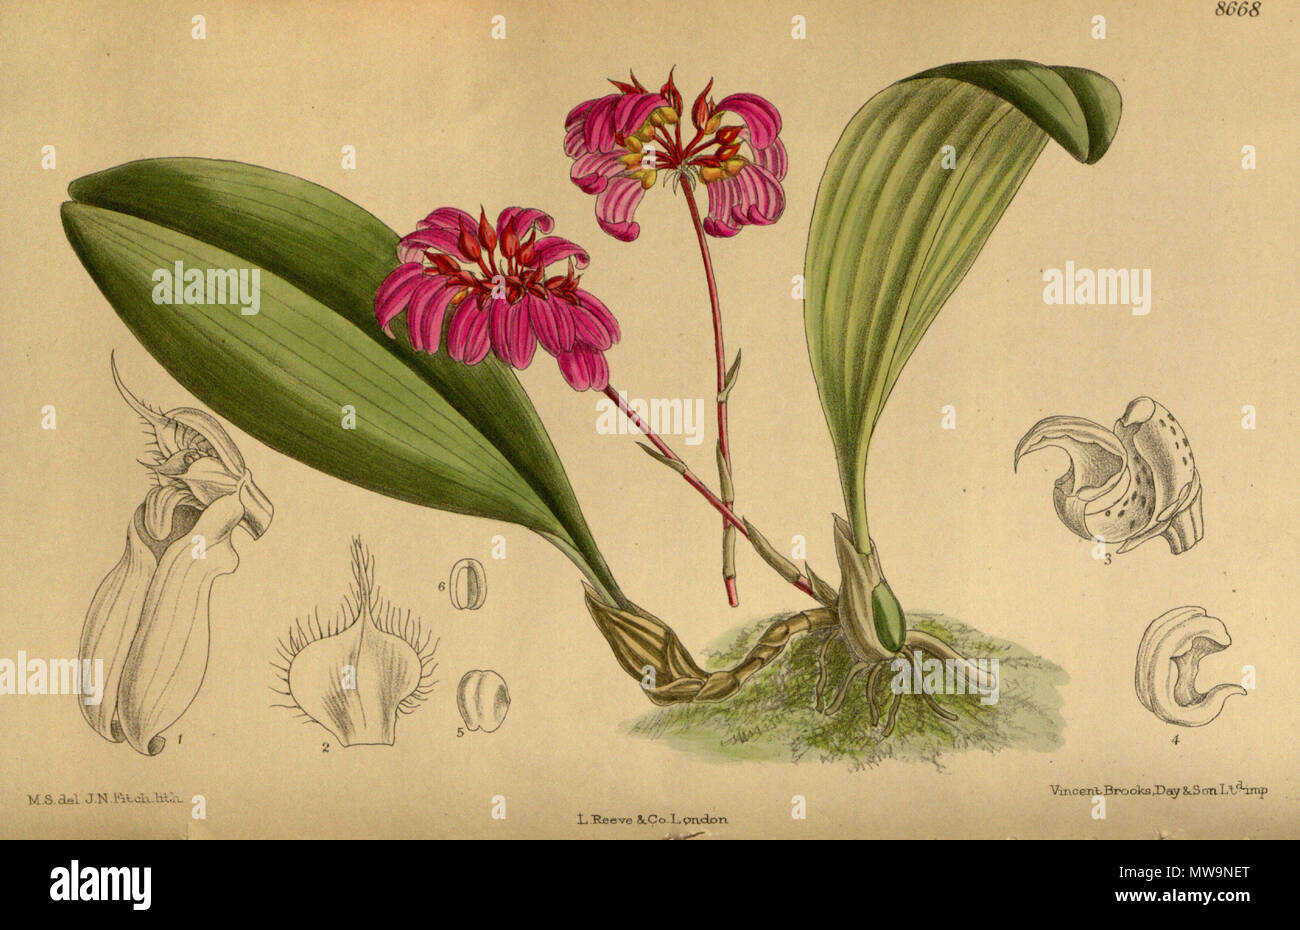 . Cirrhopetalum concinnum var. purpurea (= Bulbophyllum corolliferum), Orchidaceae . 1916. M.S. del., J.N.Fitch lith. 131 Cirrhopetalum concinnum purpurea 142-8668 Stock Photo